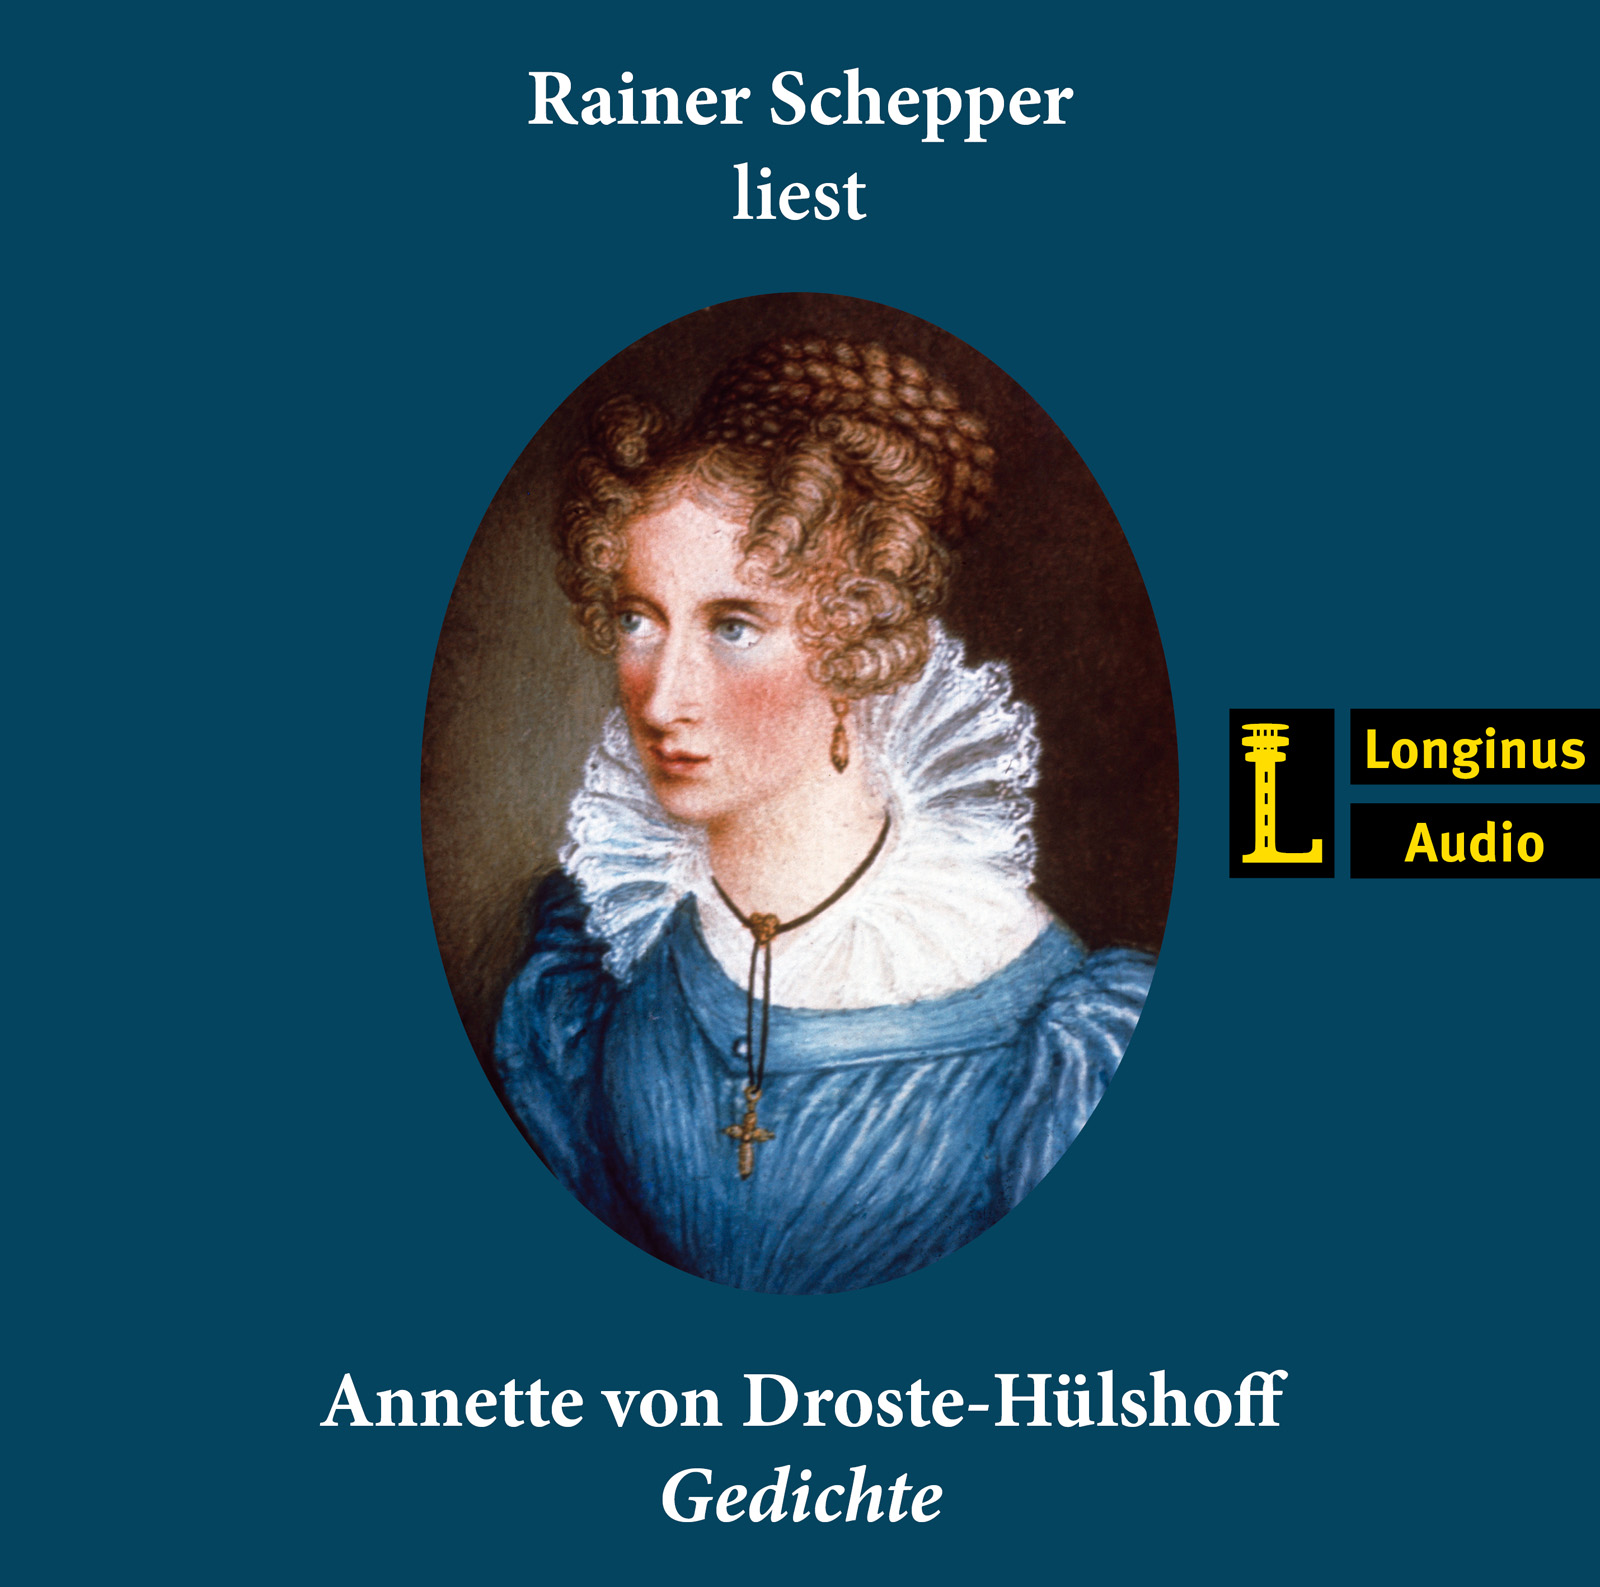 Rainer Schepper liest Gedichte von Annette von Droste-Hülshoff - Hörbuch